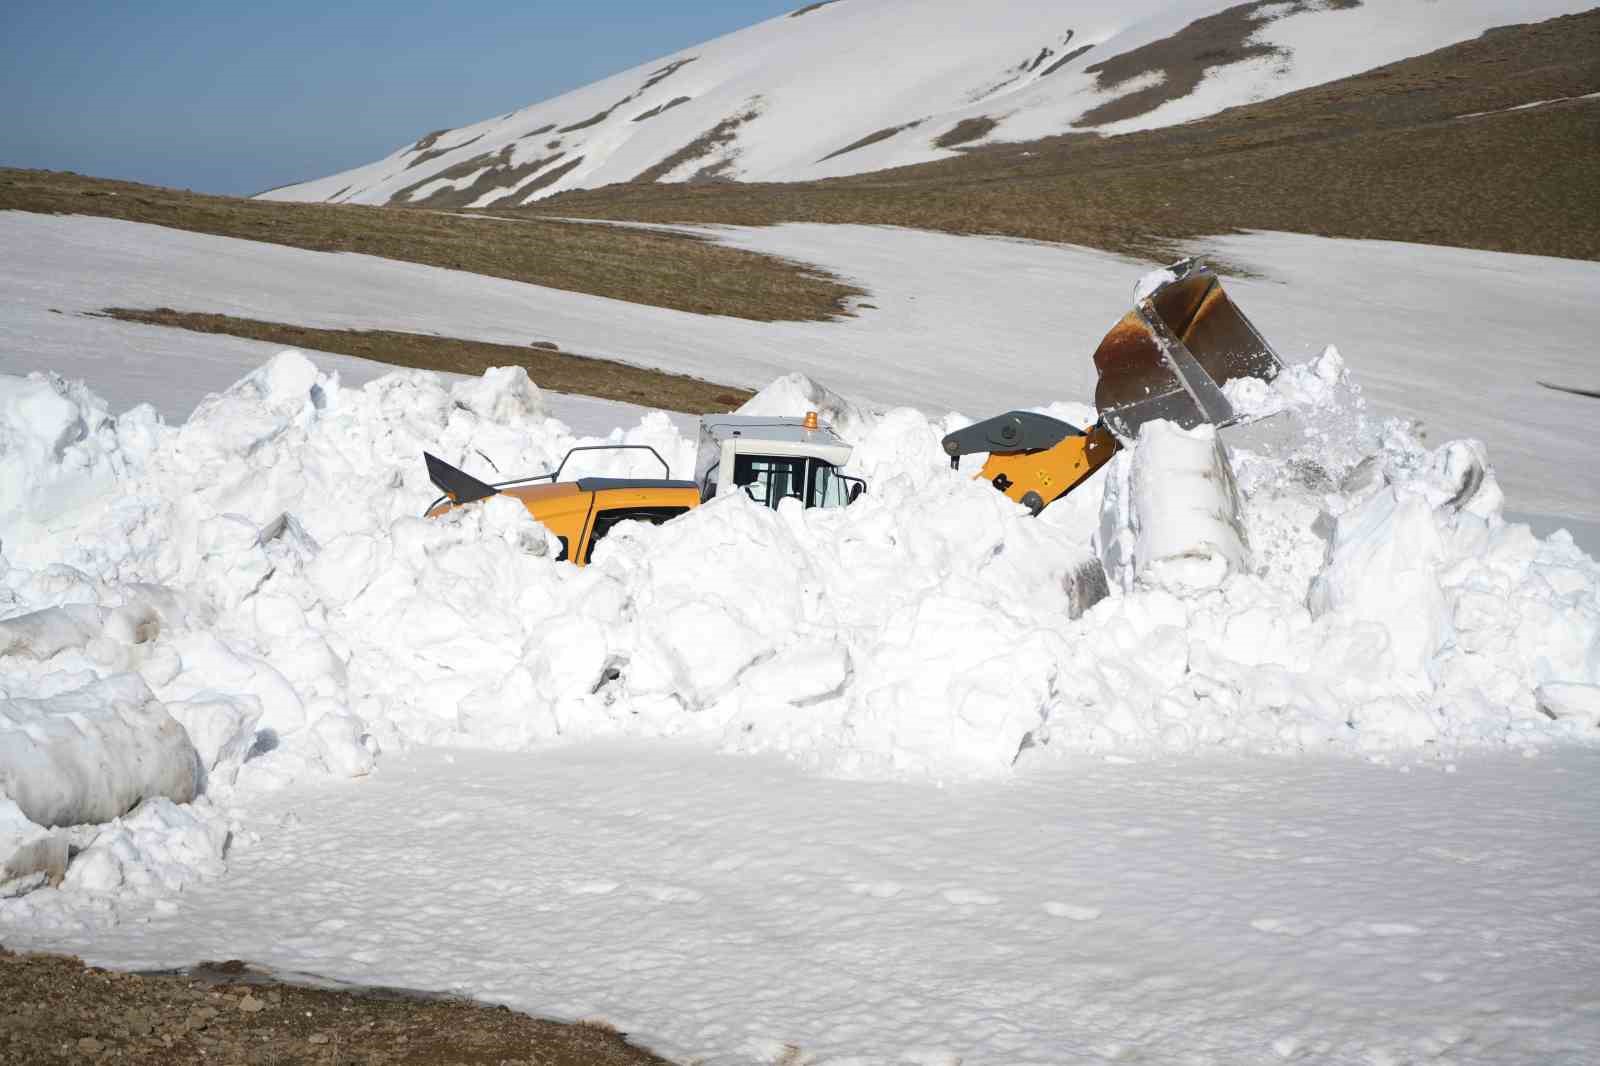 Muş’ta karla mücadele ekipleri 4 ayda 23 bin kilometre yol açtı
